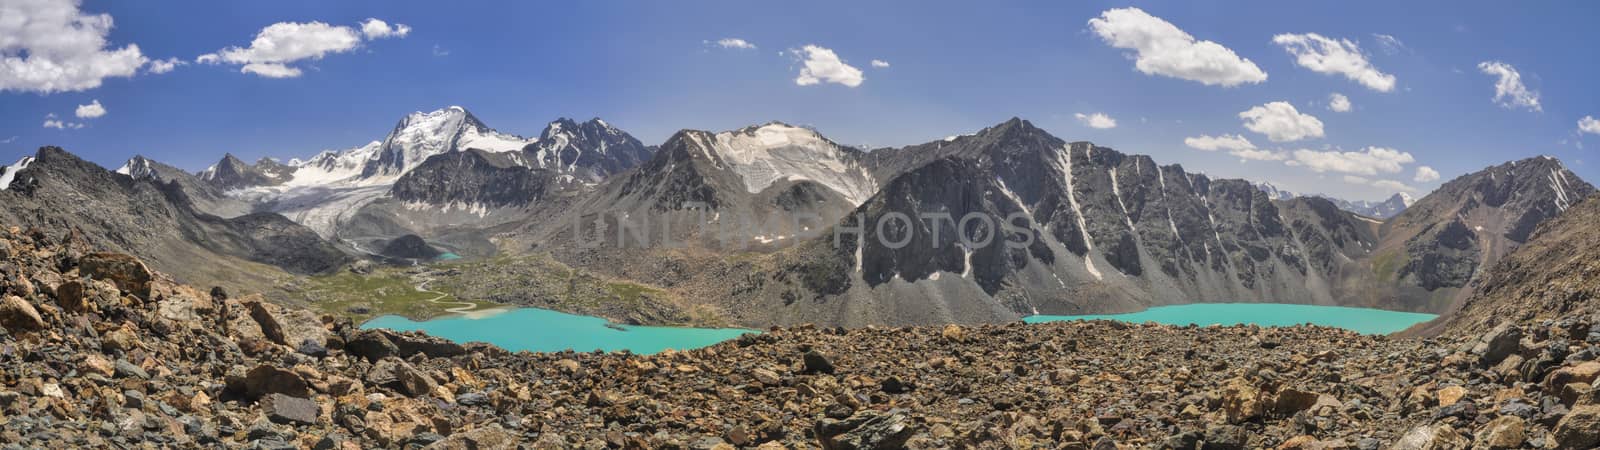 Lake in Kyrgyzstan by MichalKnitl